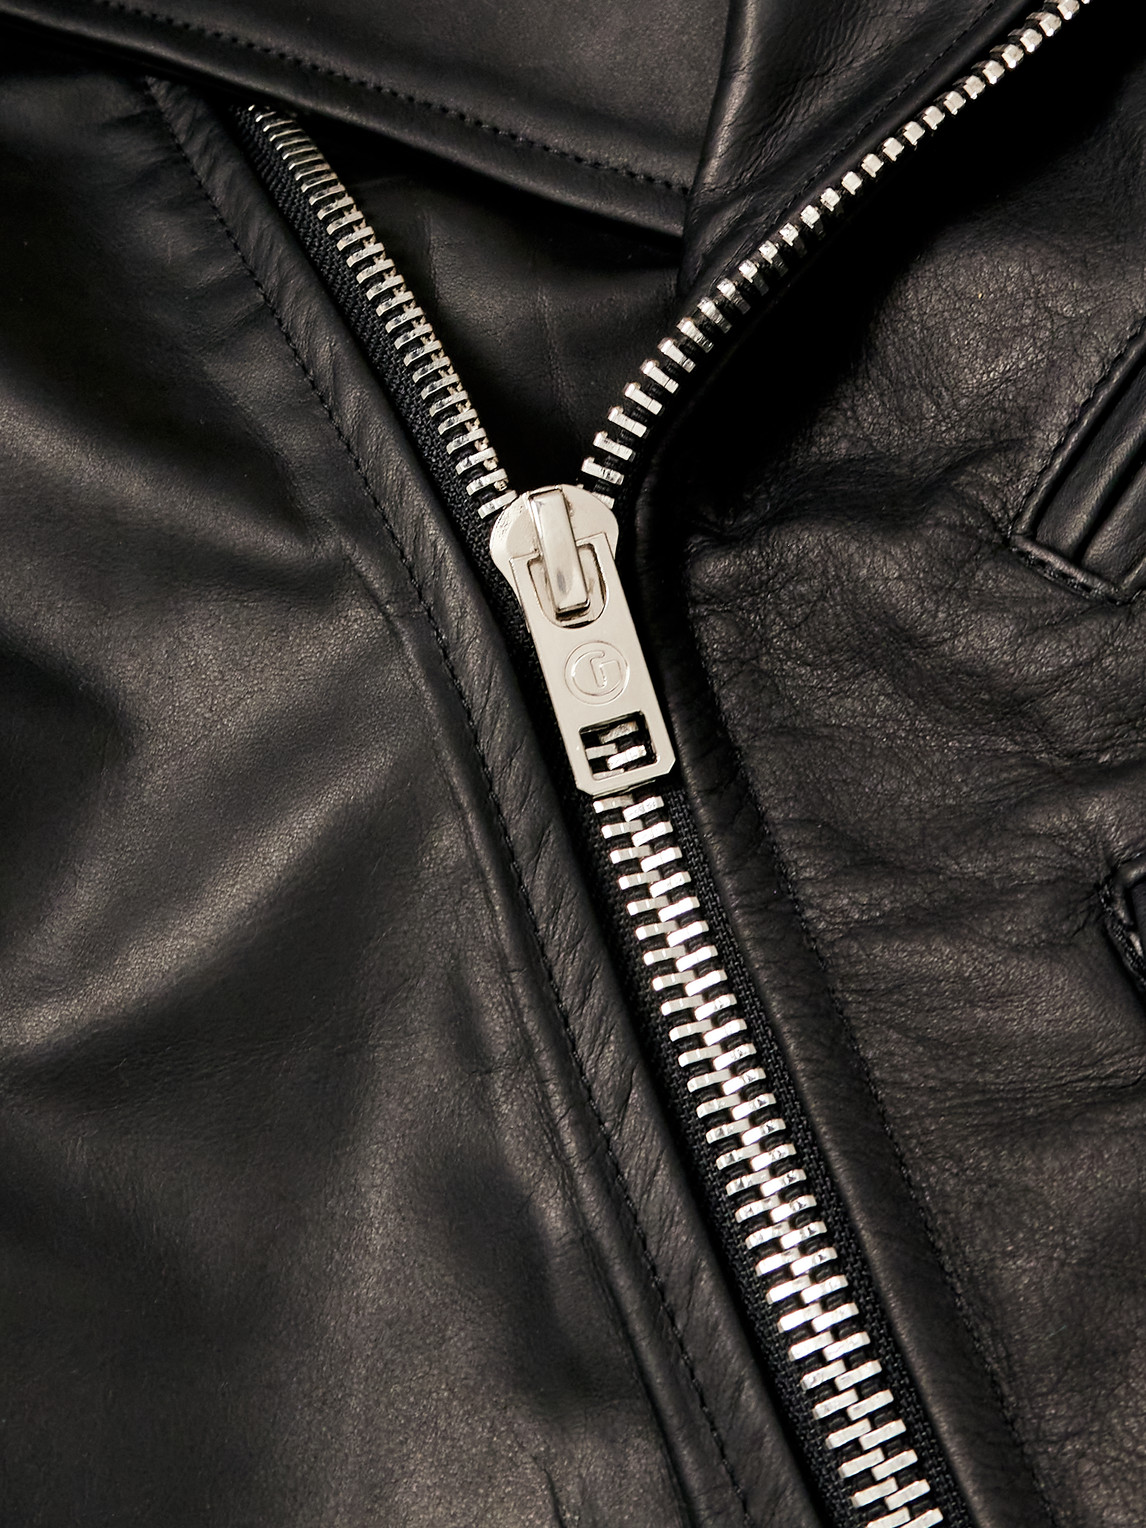 Shop Gallery Dept. Leather Biker Jacket In Black